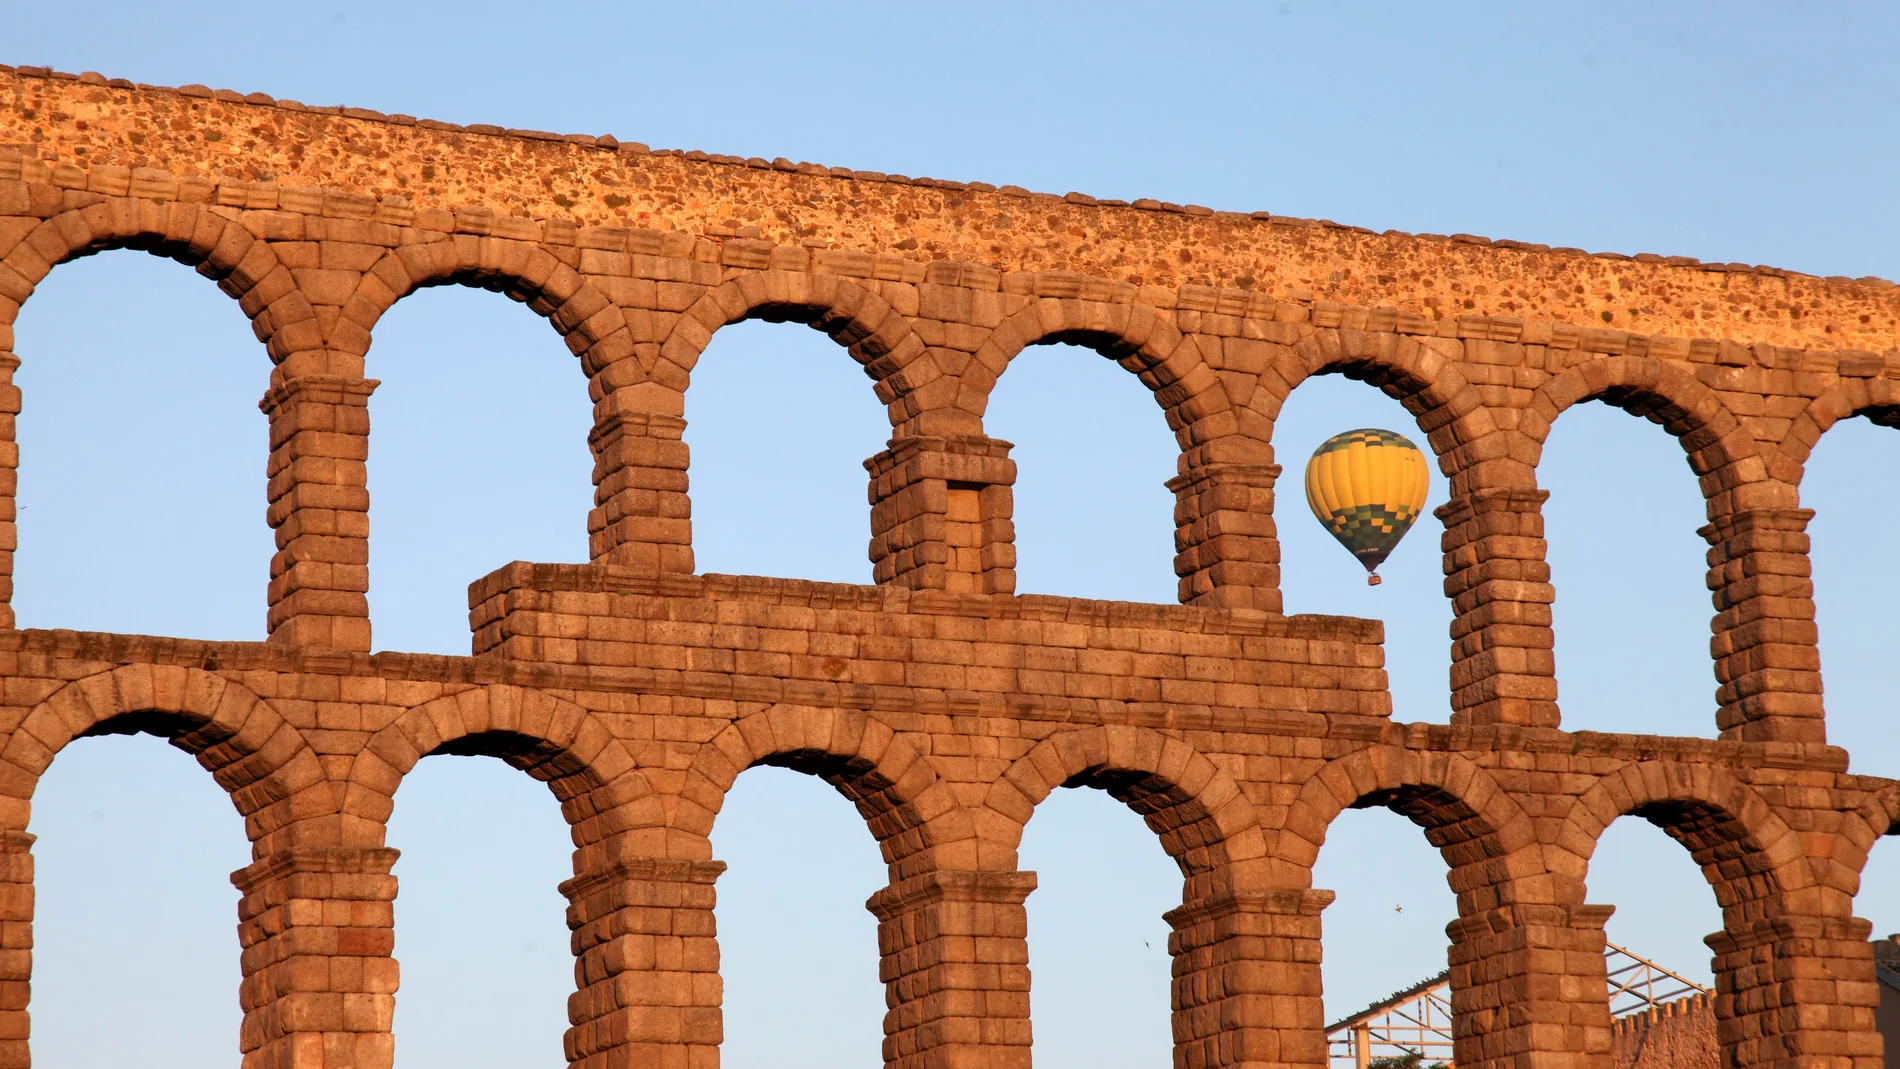 Un globo aerostático sobrevuela los cielos de Segovia, con la vista del Acueducto